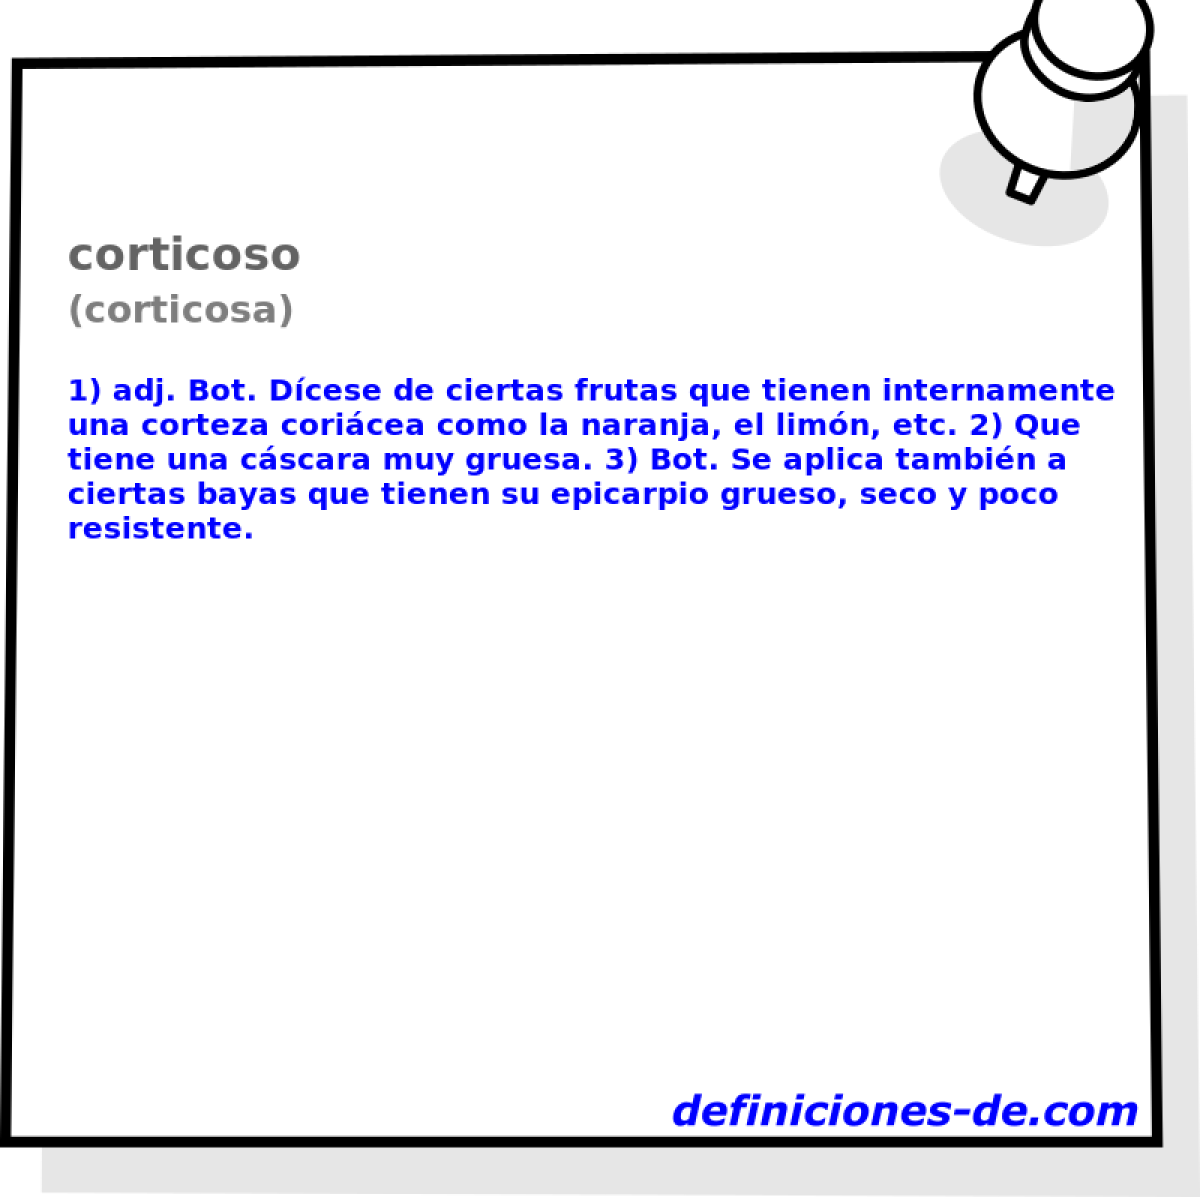 corticoso (corticosa)